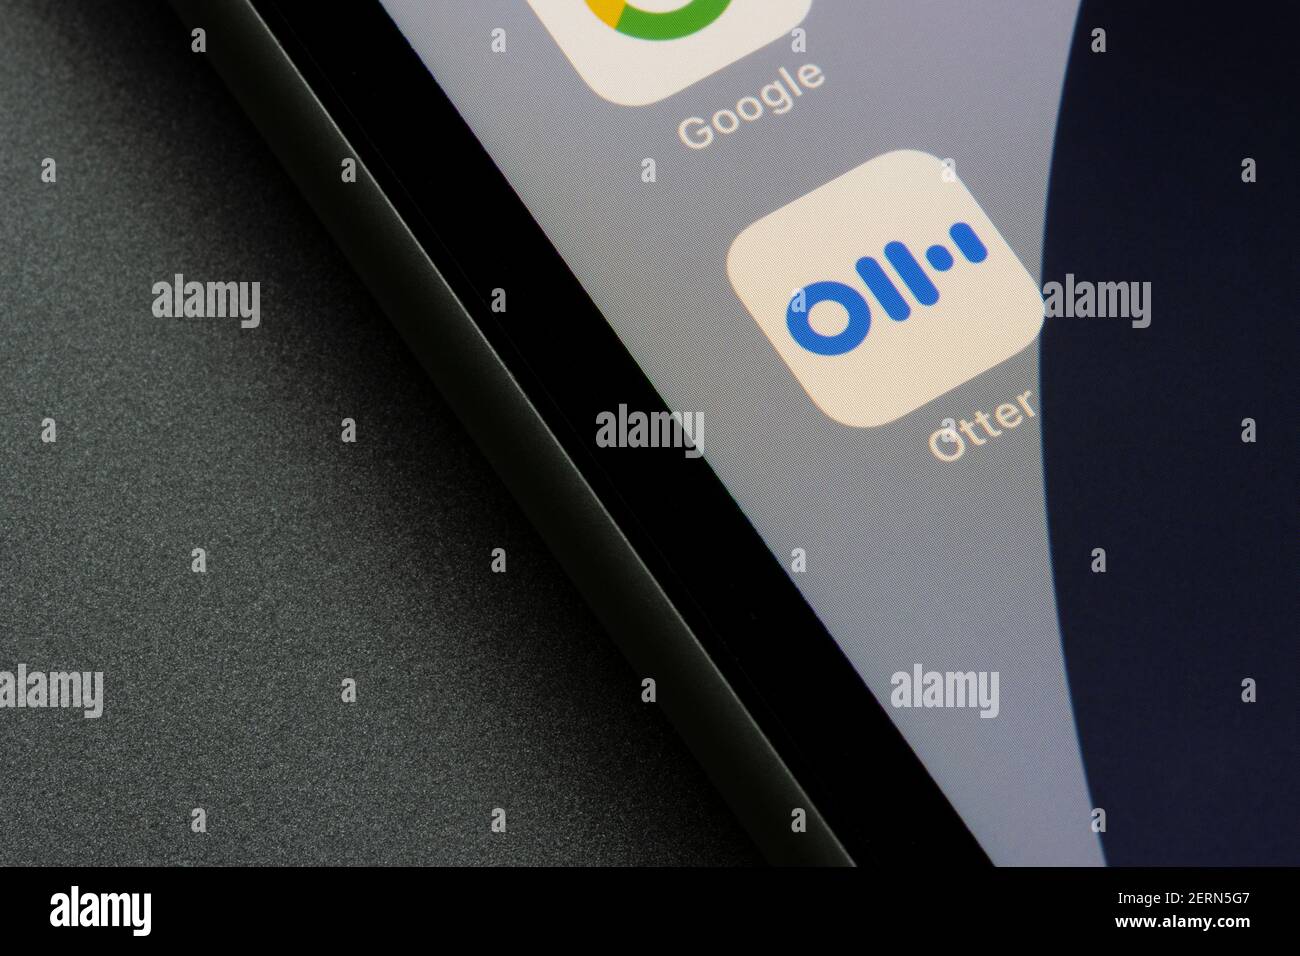 L'icône de l'application Notes Otter Voice Meeting apparaît sur un iPhone. Otter.ai développe des applications de transcription et de traduction de la parole au texte à l'aide de l'IA et de l'apprentissage machine. Banque D'Images